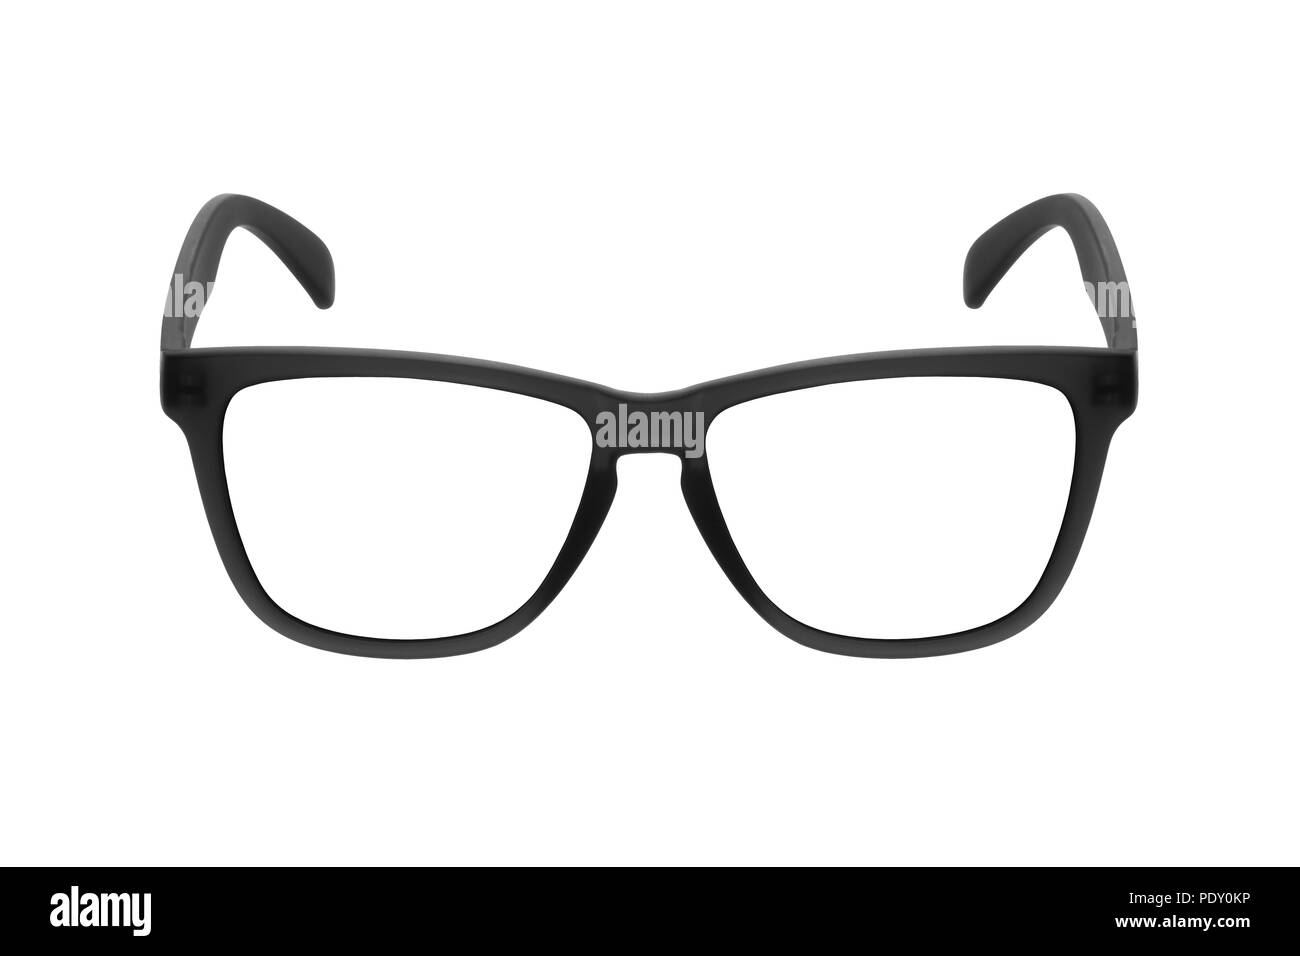 Eye glasses frame black isolated on white background Stock Photo